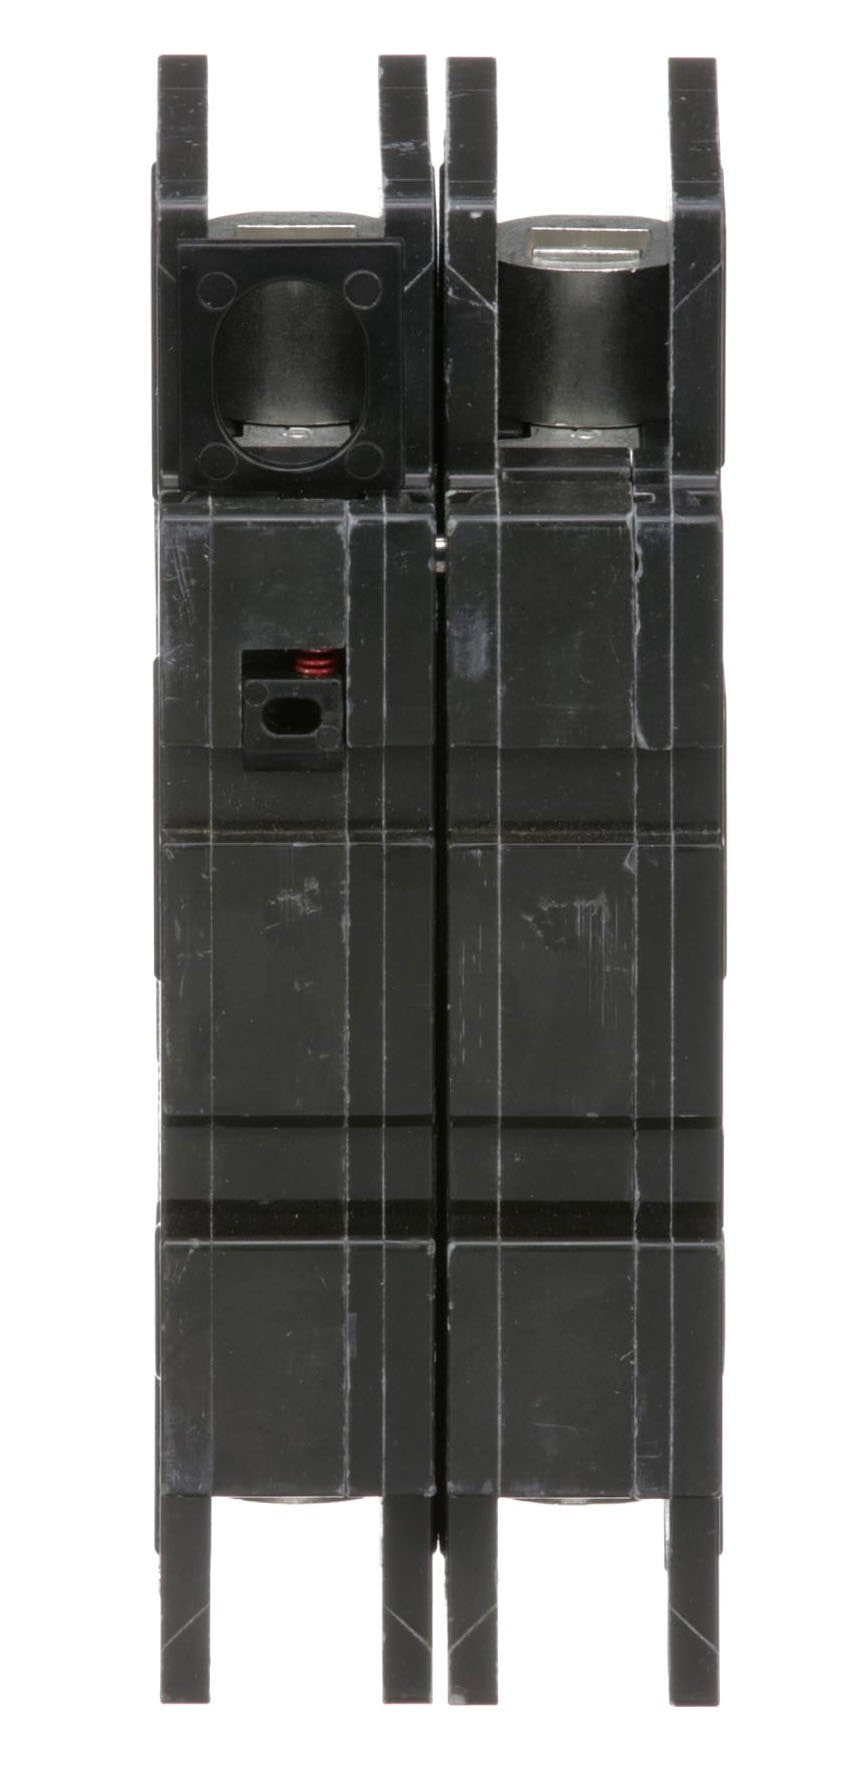 QOU225 - Square D - 25 Amp Circuit Breaker